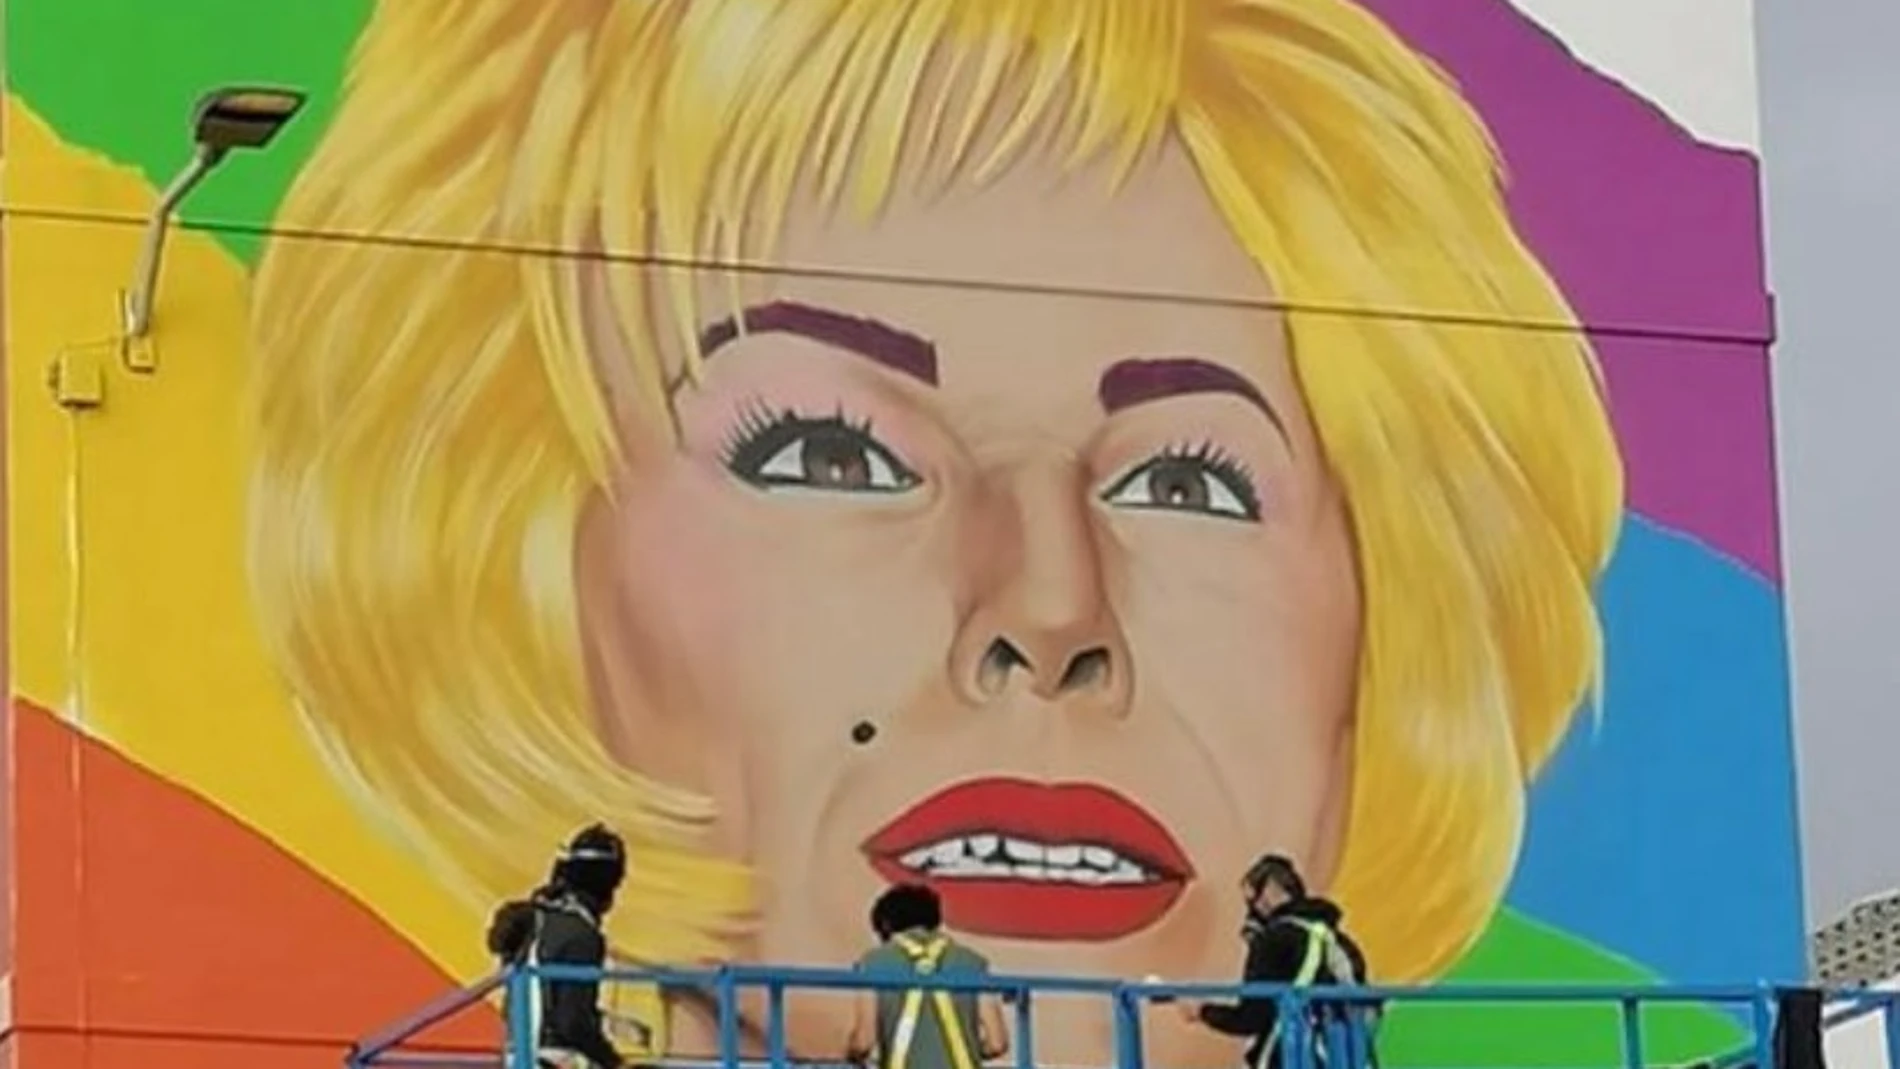 Canarias homenajea al humorista y transformista Xayo con un gran mural callejero 